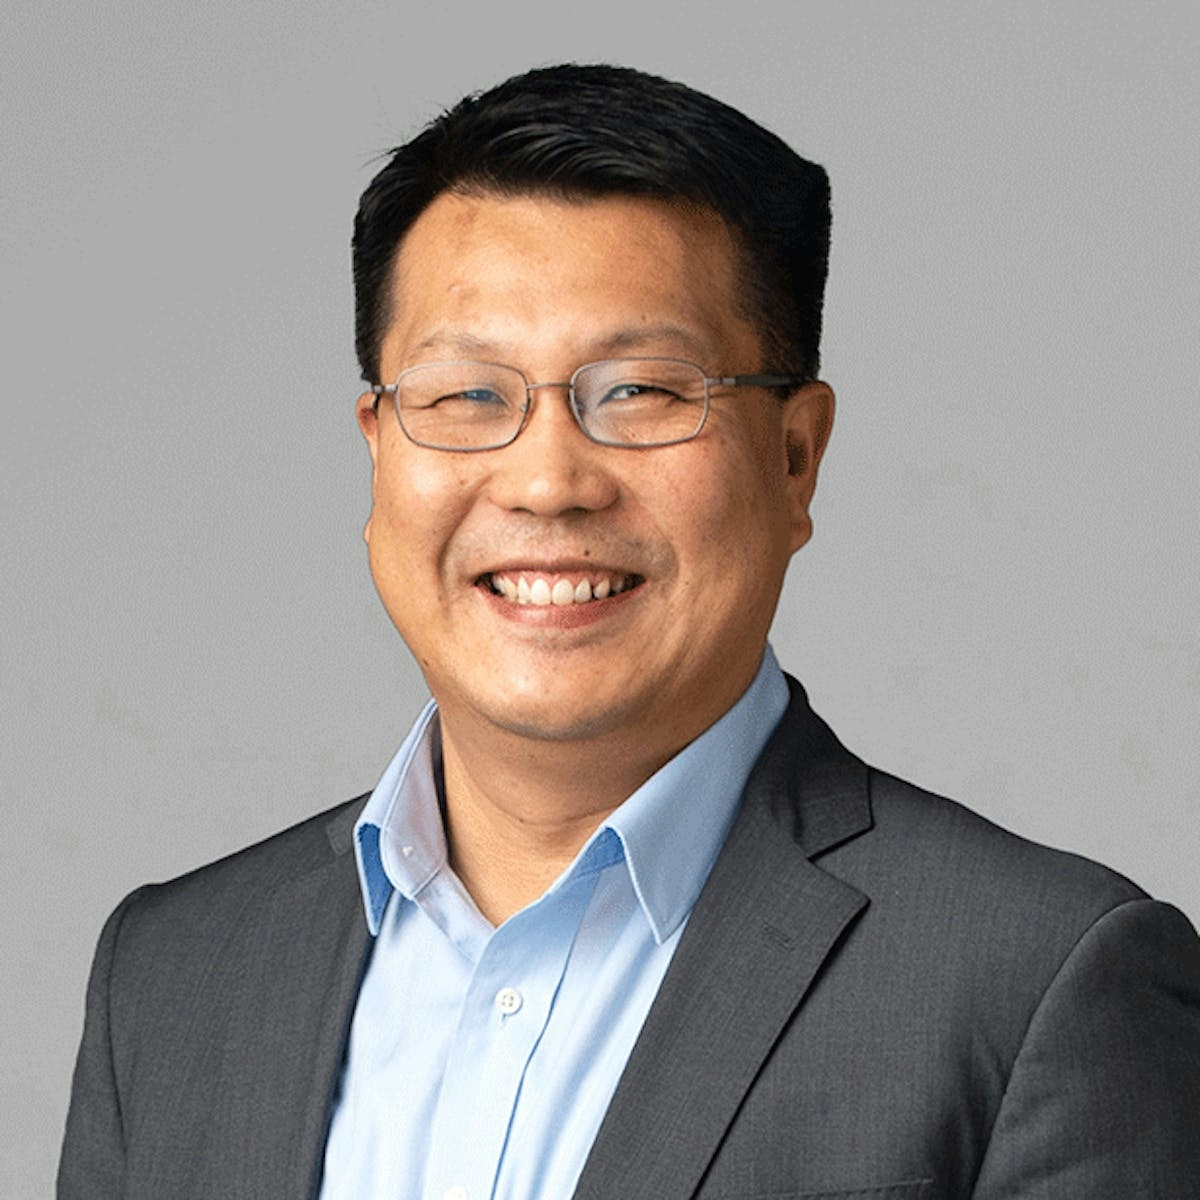 Portrait of Kwang Lee, AIA, LEED AP